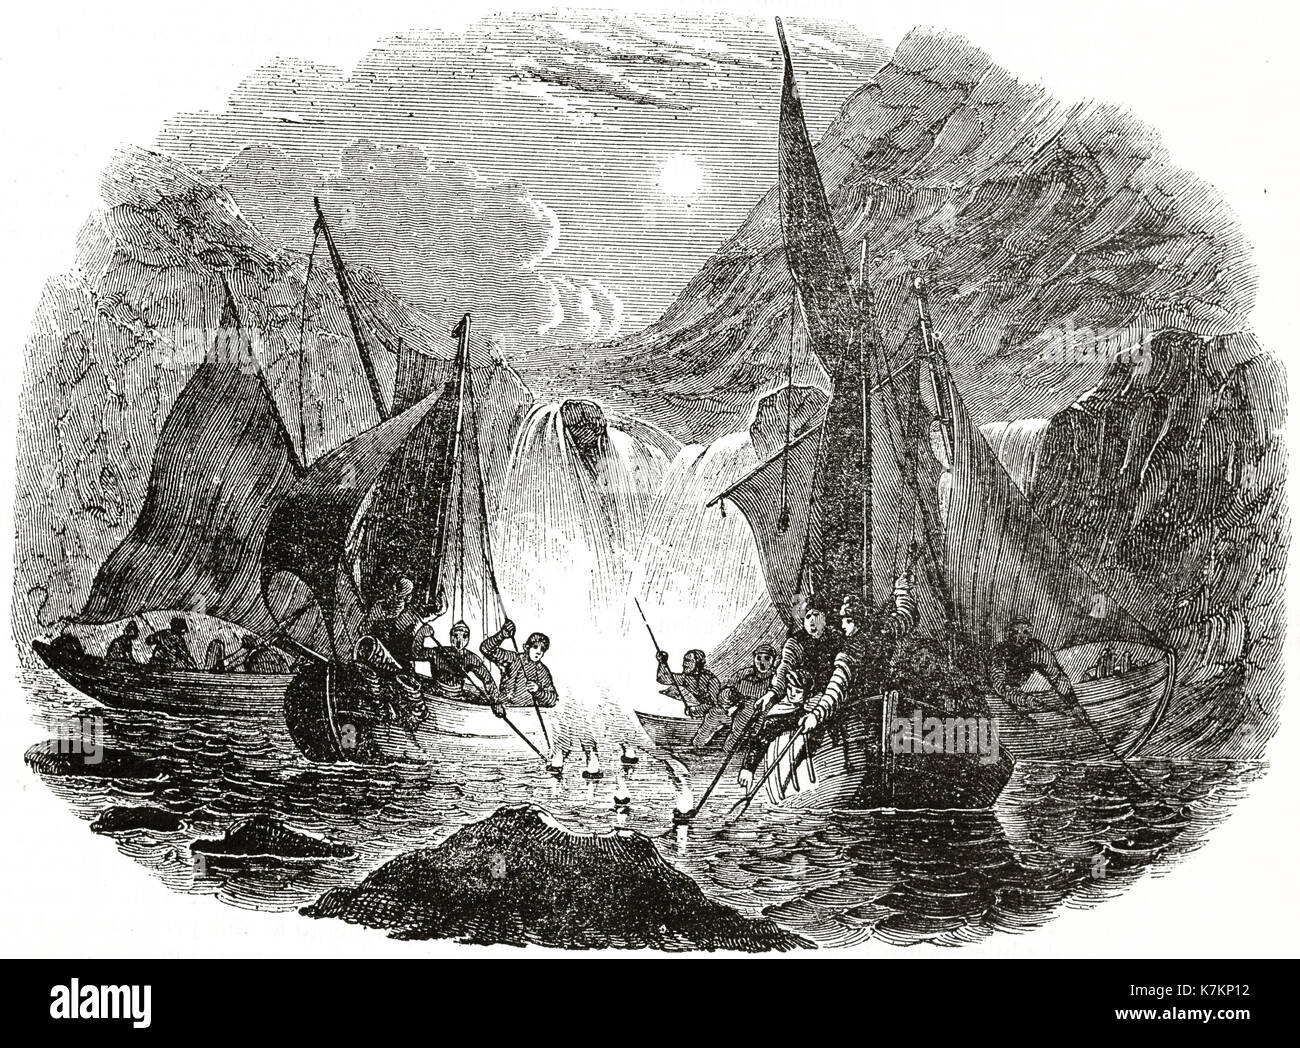 Vieille illustration de harponner le saumon. Par auteur non identifié, publ. sur le Penny Magazine, Londres, 1837 Banque D'Images